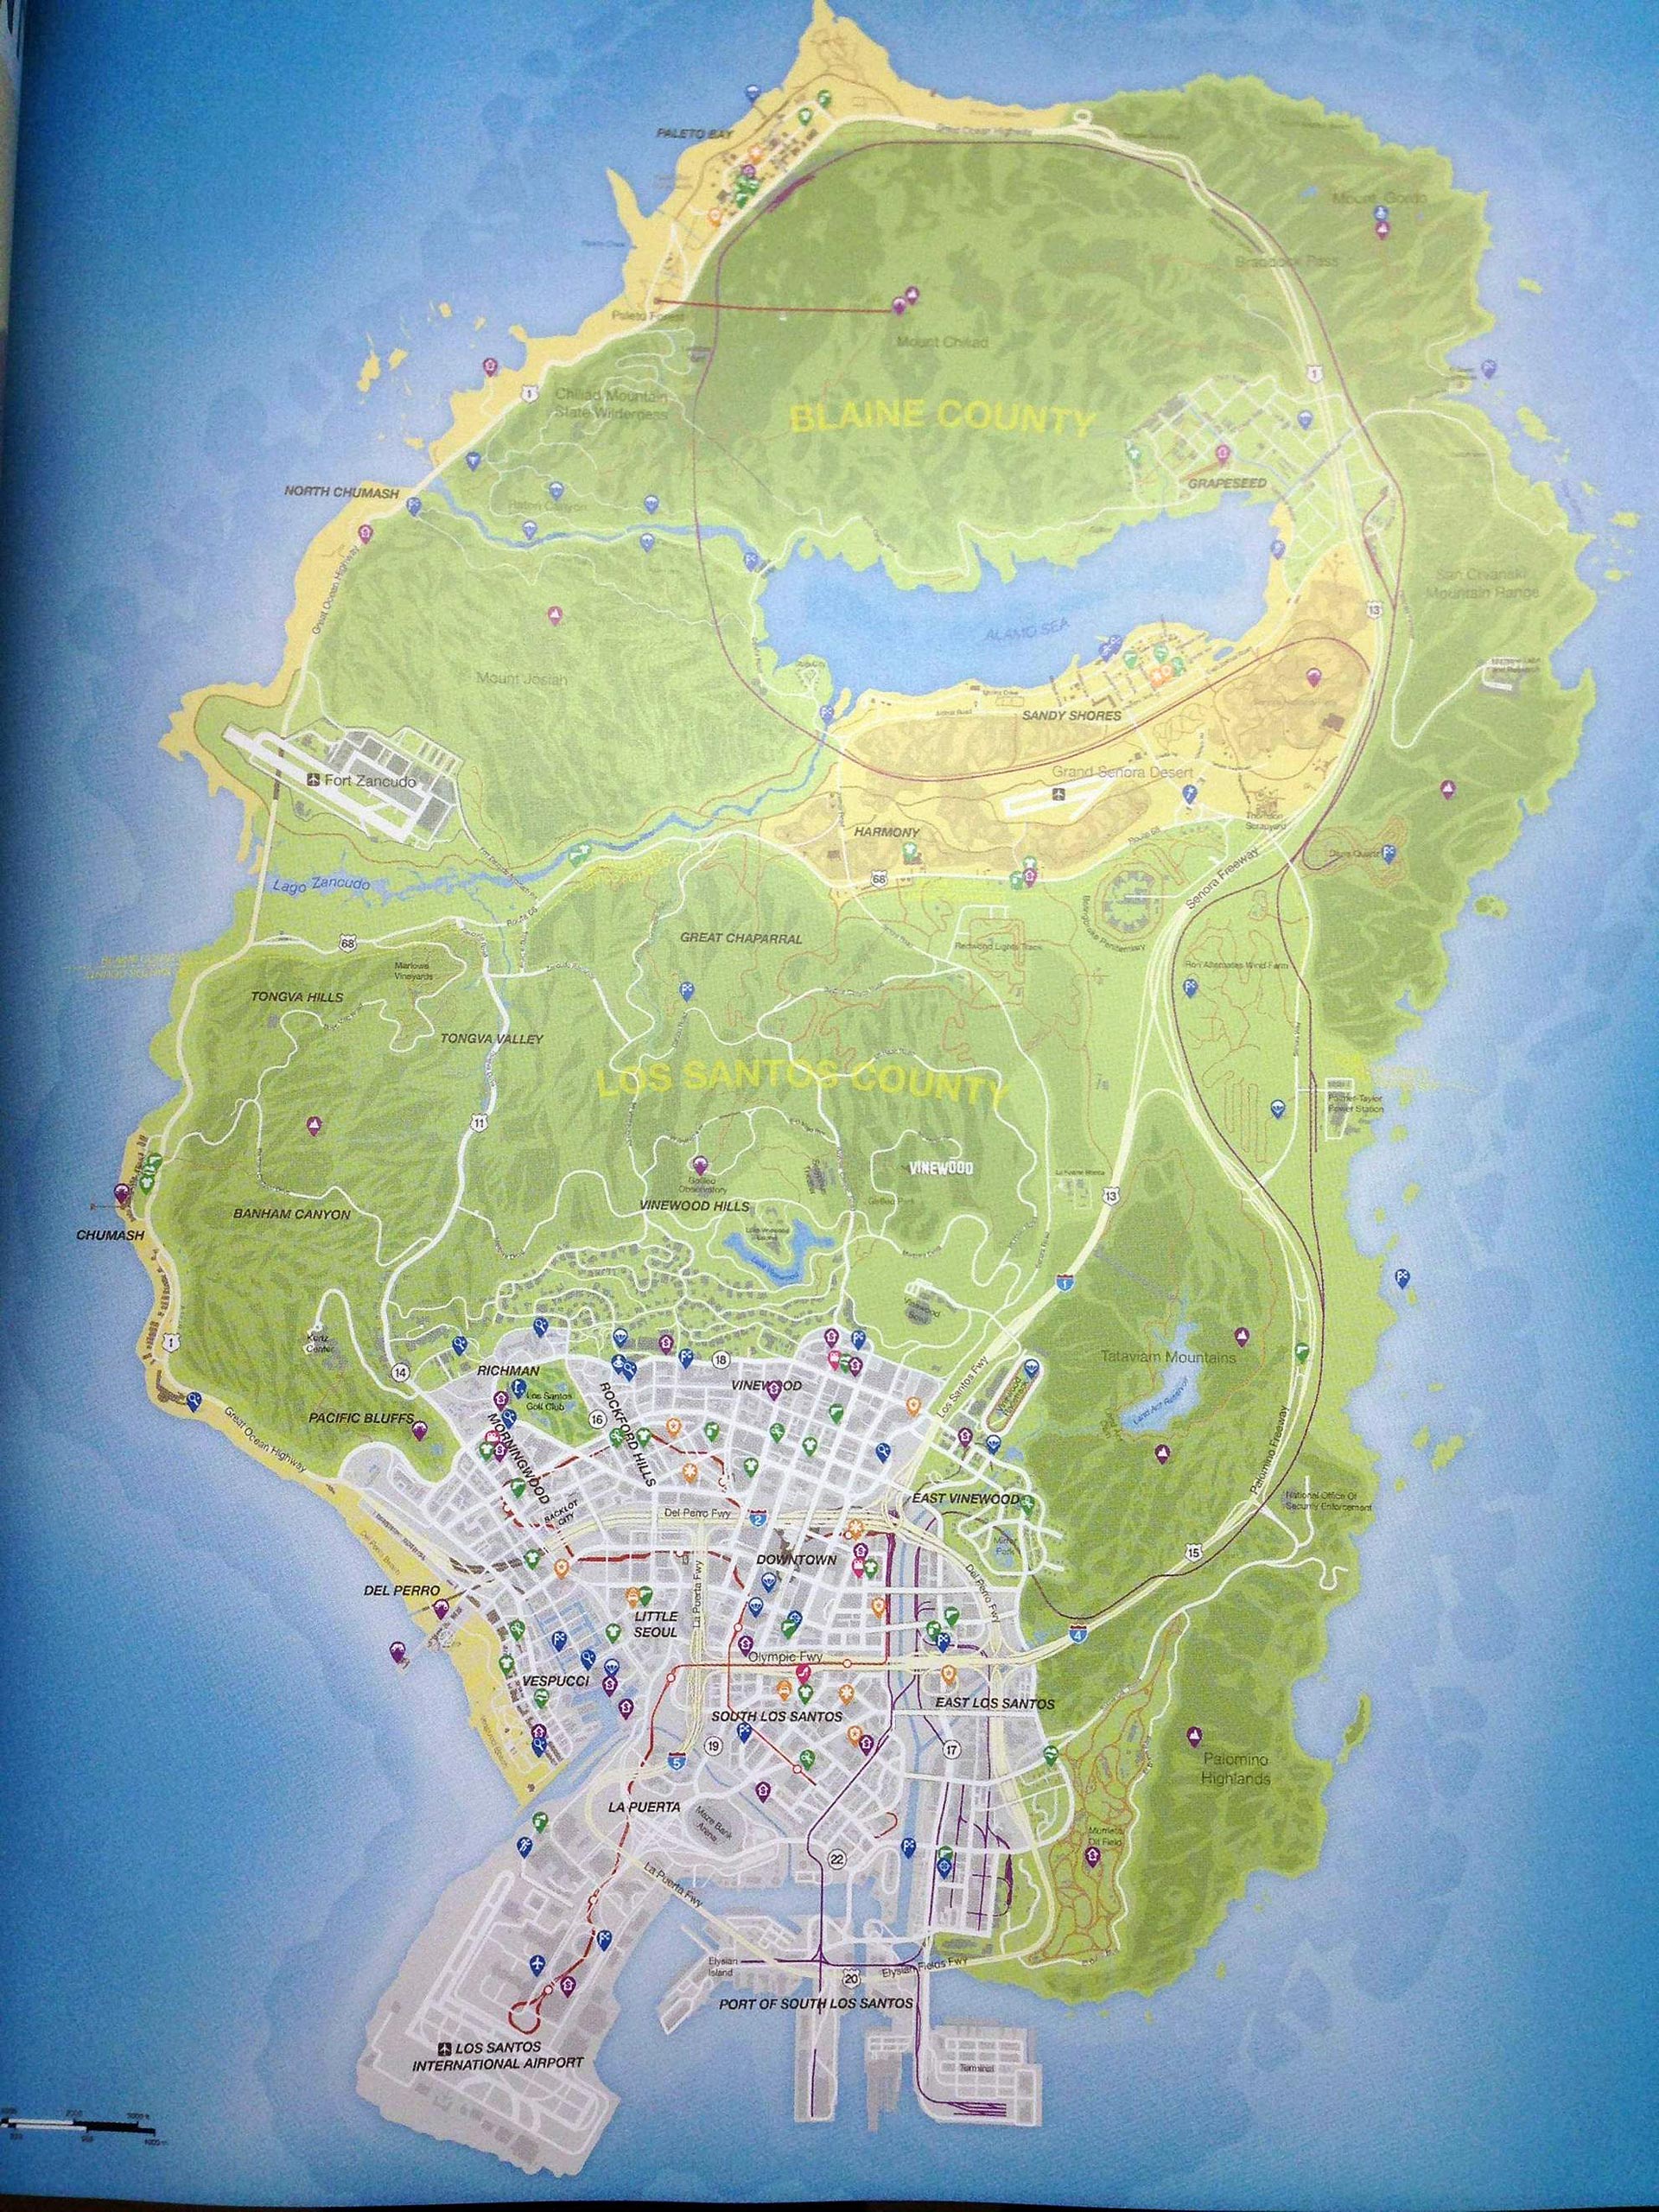 GTA V Map leaked